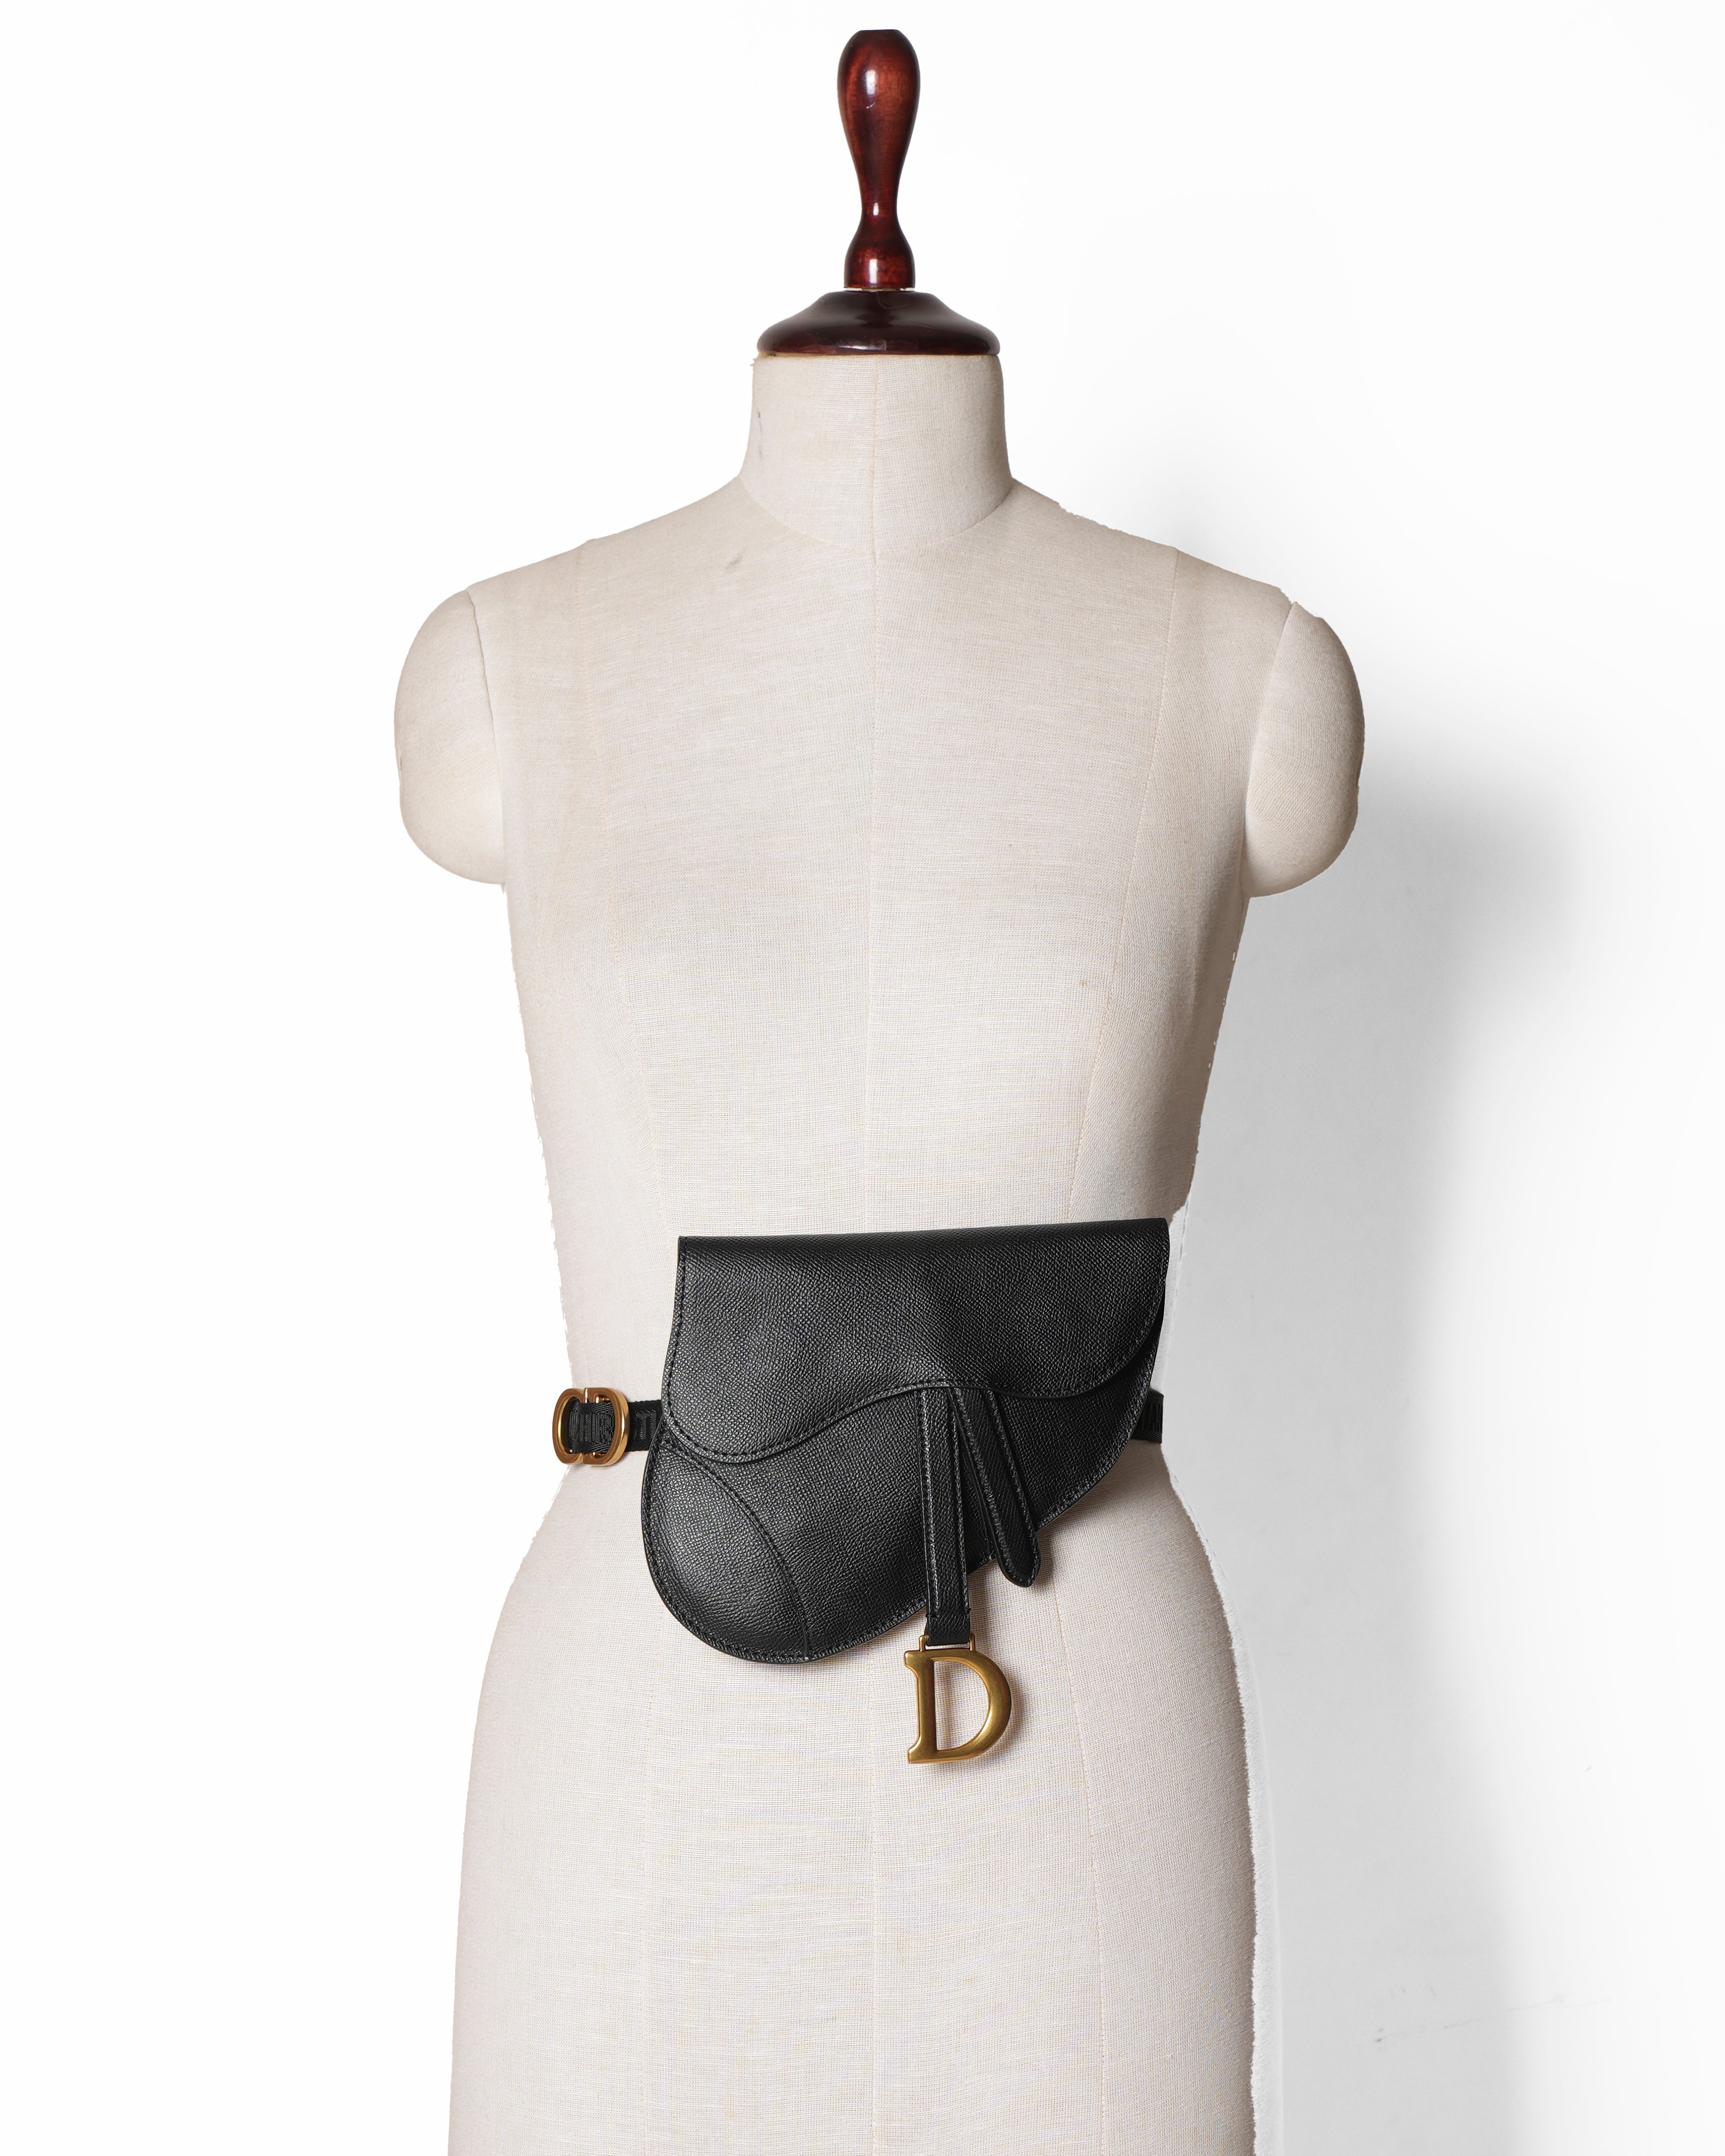 Christian Dior Saddle Belt Leather Bag